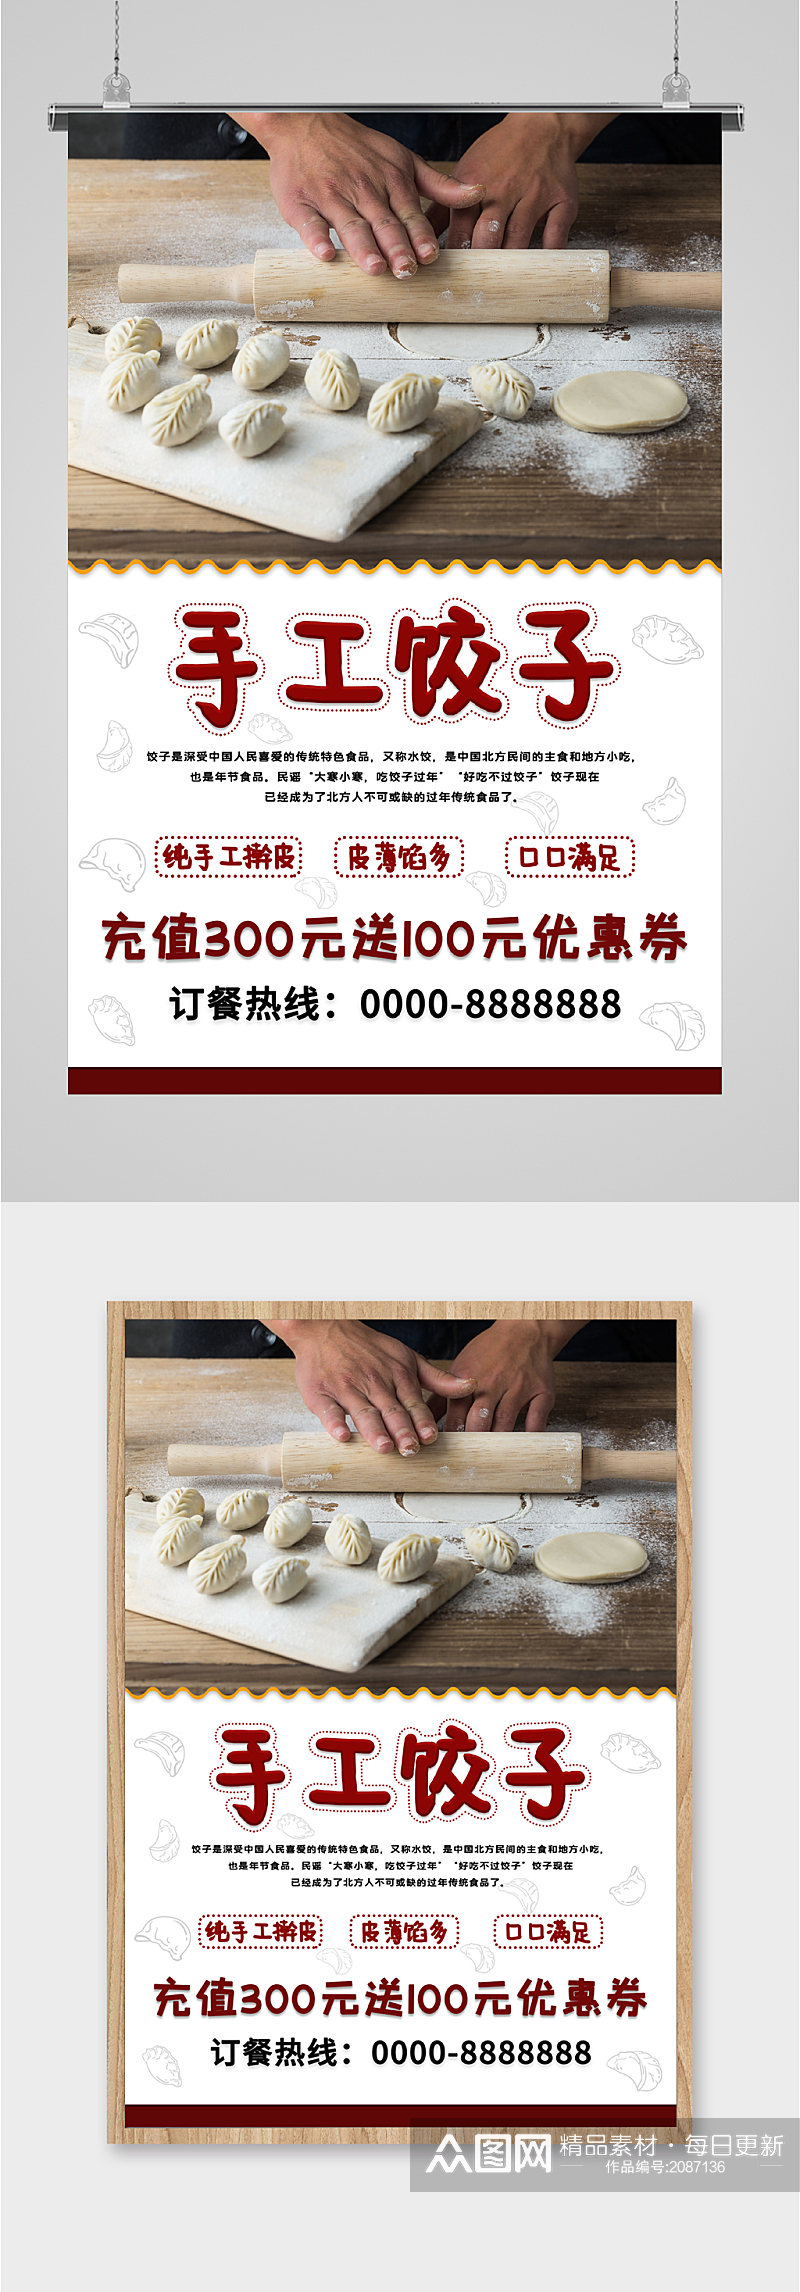 手工饺子促销海报素材